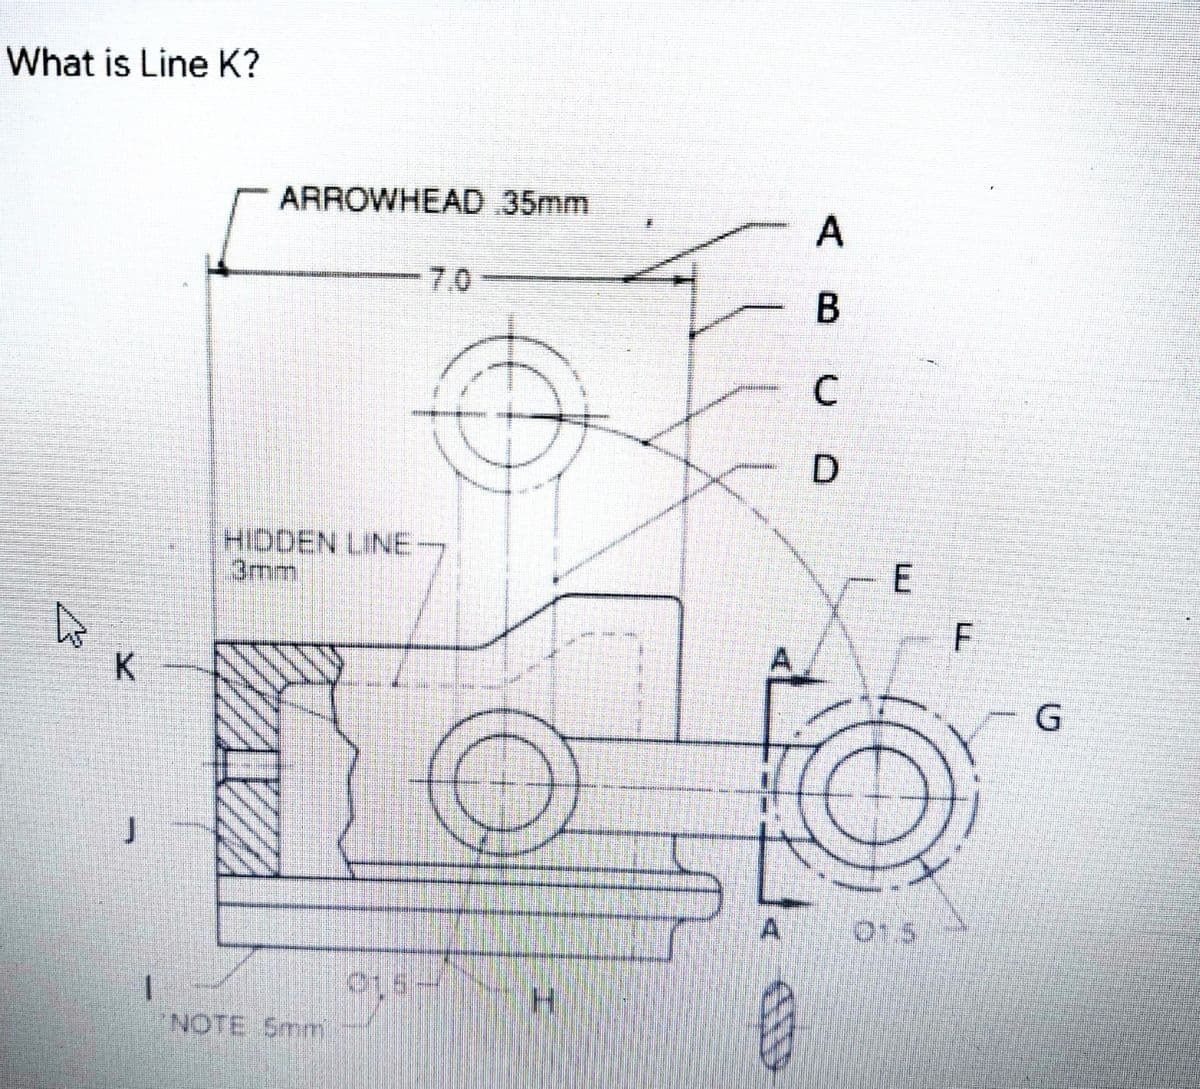 What is Line K?
ARROWHEAD 35mm
7.0
C
D
HIDDEN LINE-
3mm
K
G
015
1.
NOTE 5mm
E.
AB
